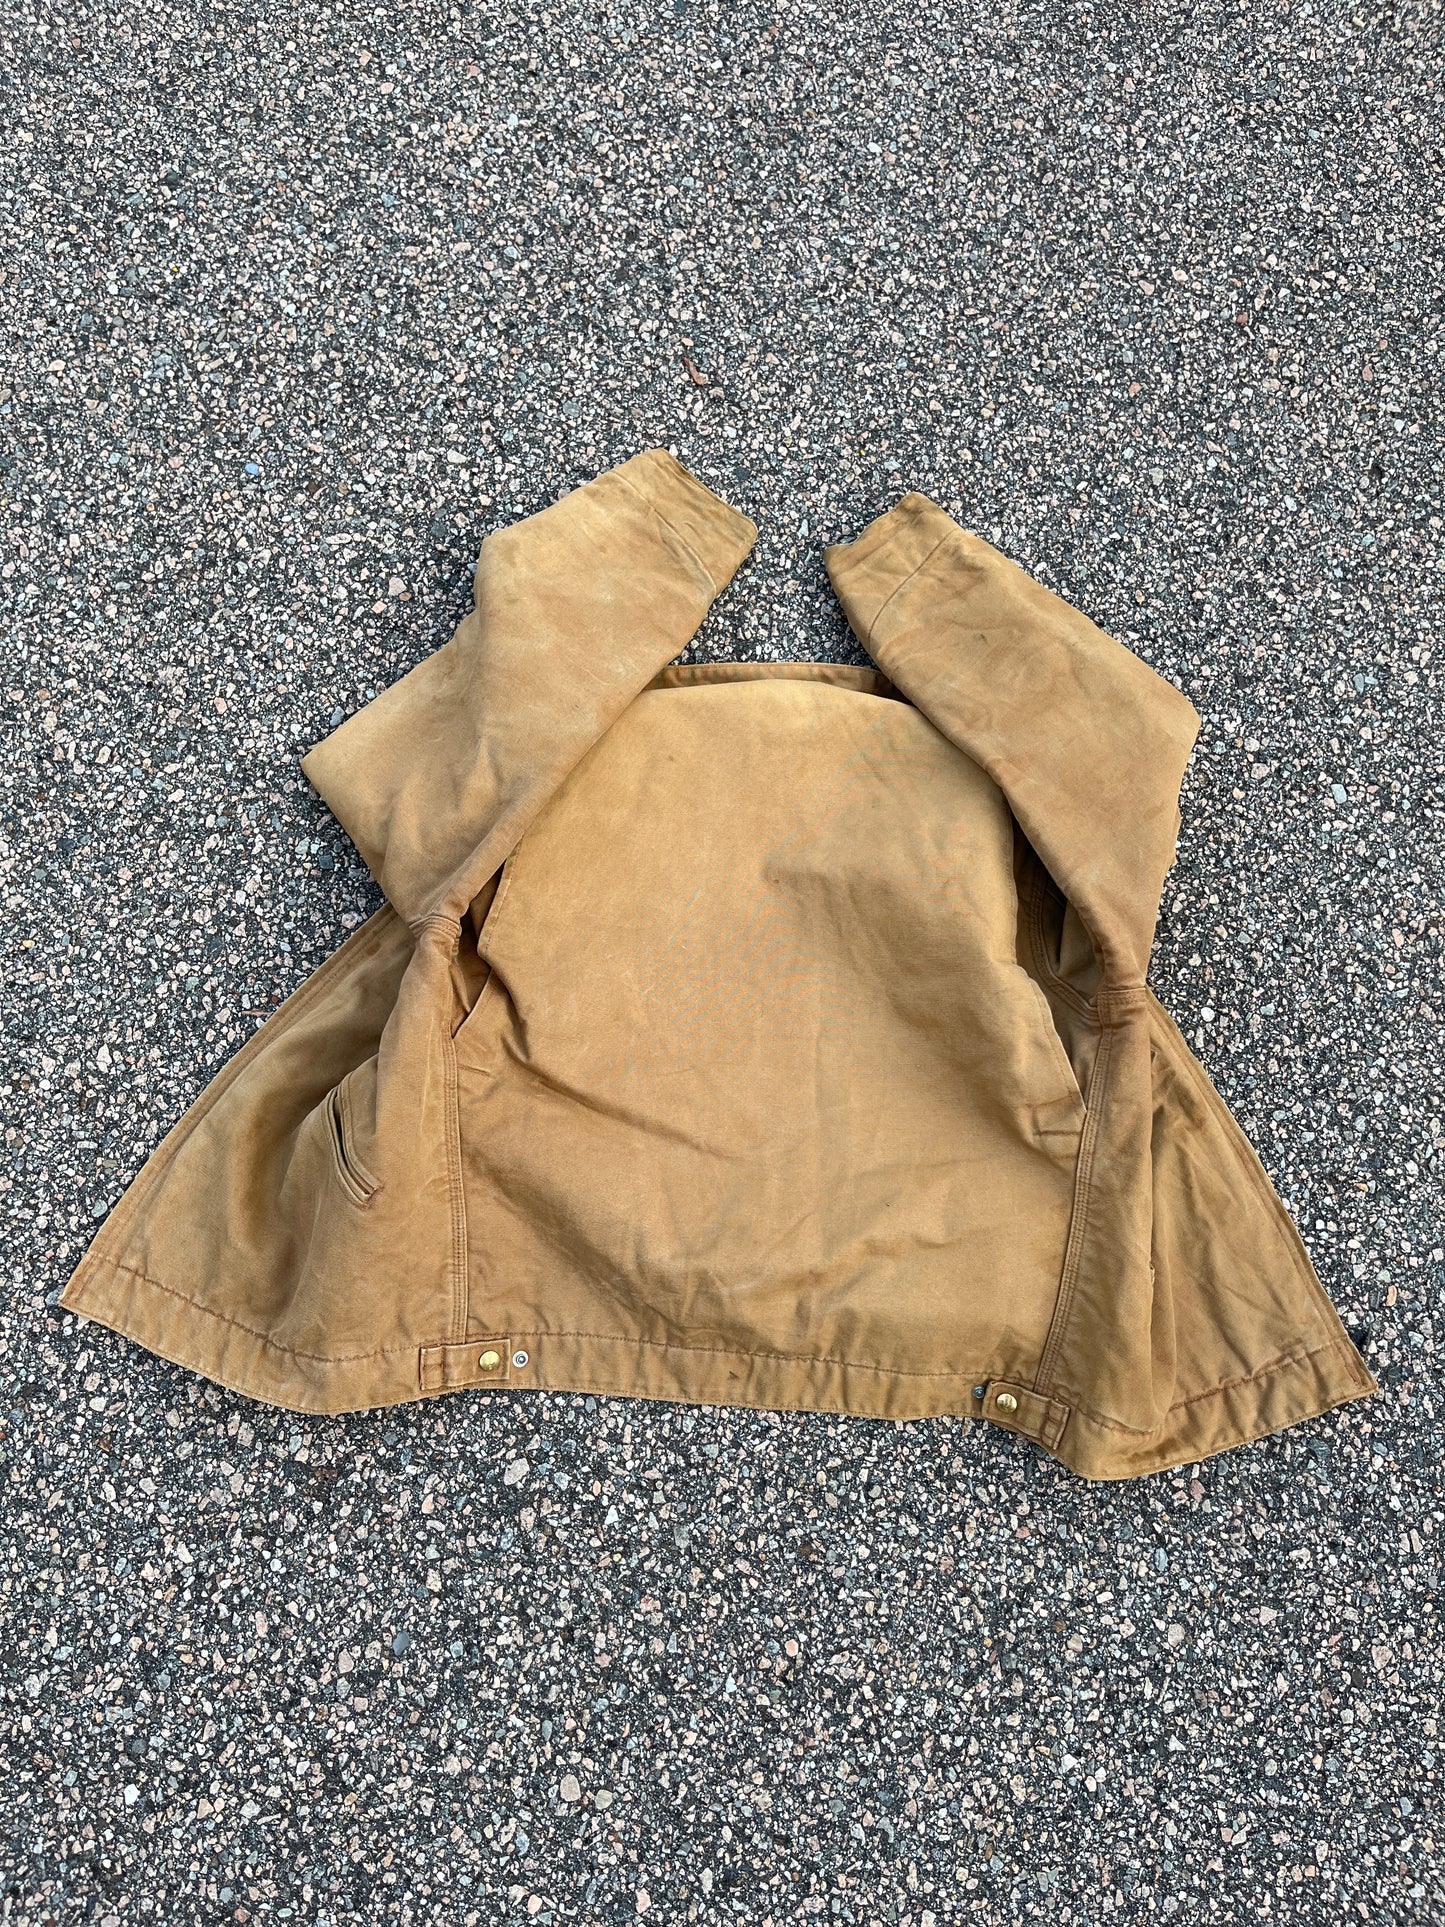 Faded Tan Carhartt Detroit Jacket - Medium